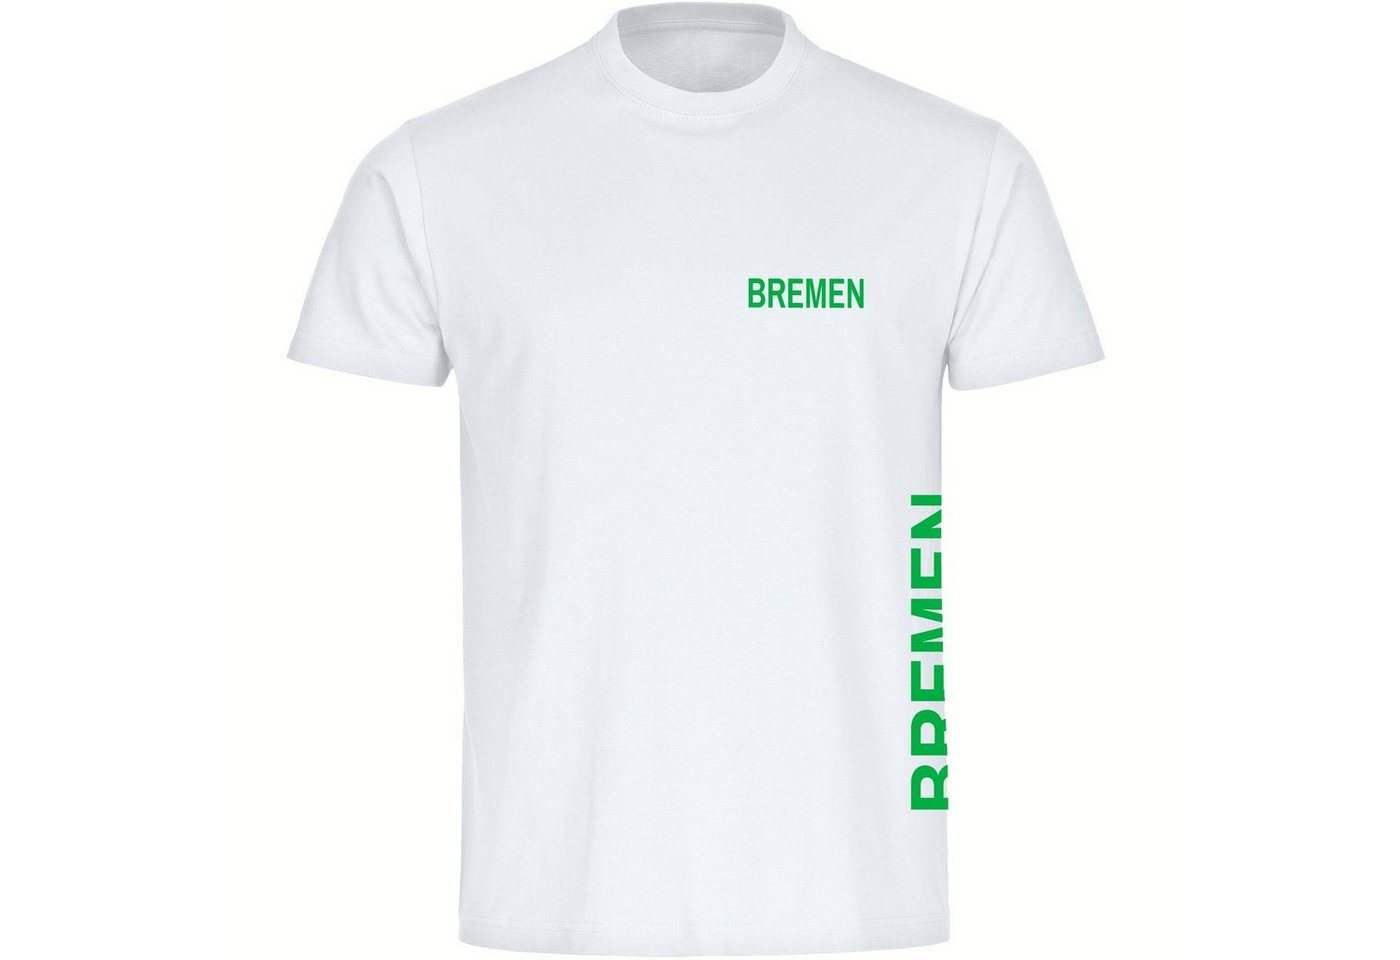 multifanshop T-Shirt Herren Bremen - Brust & Seite - Männer von multifanshop